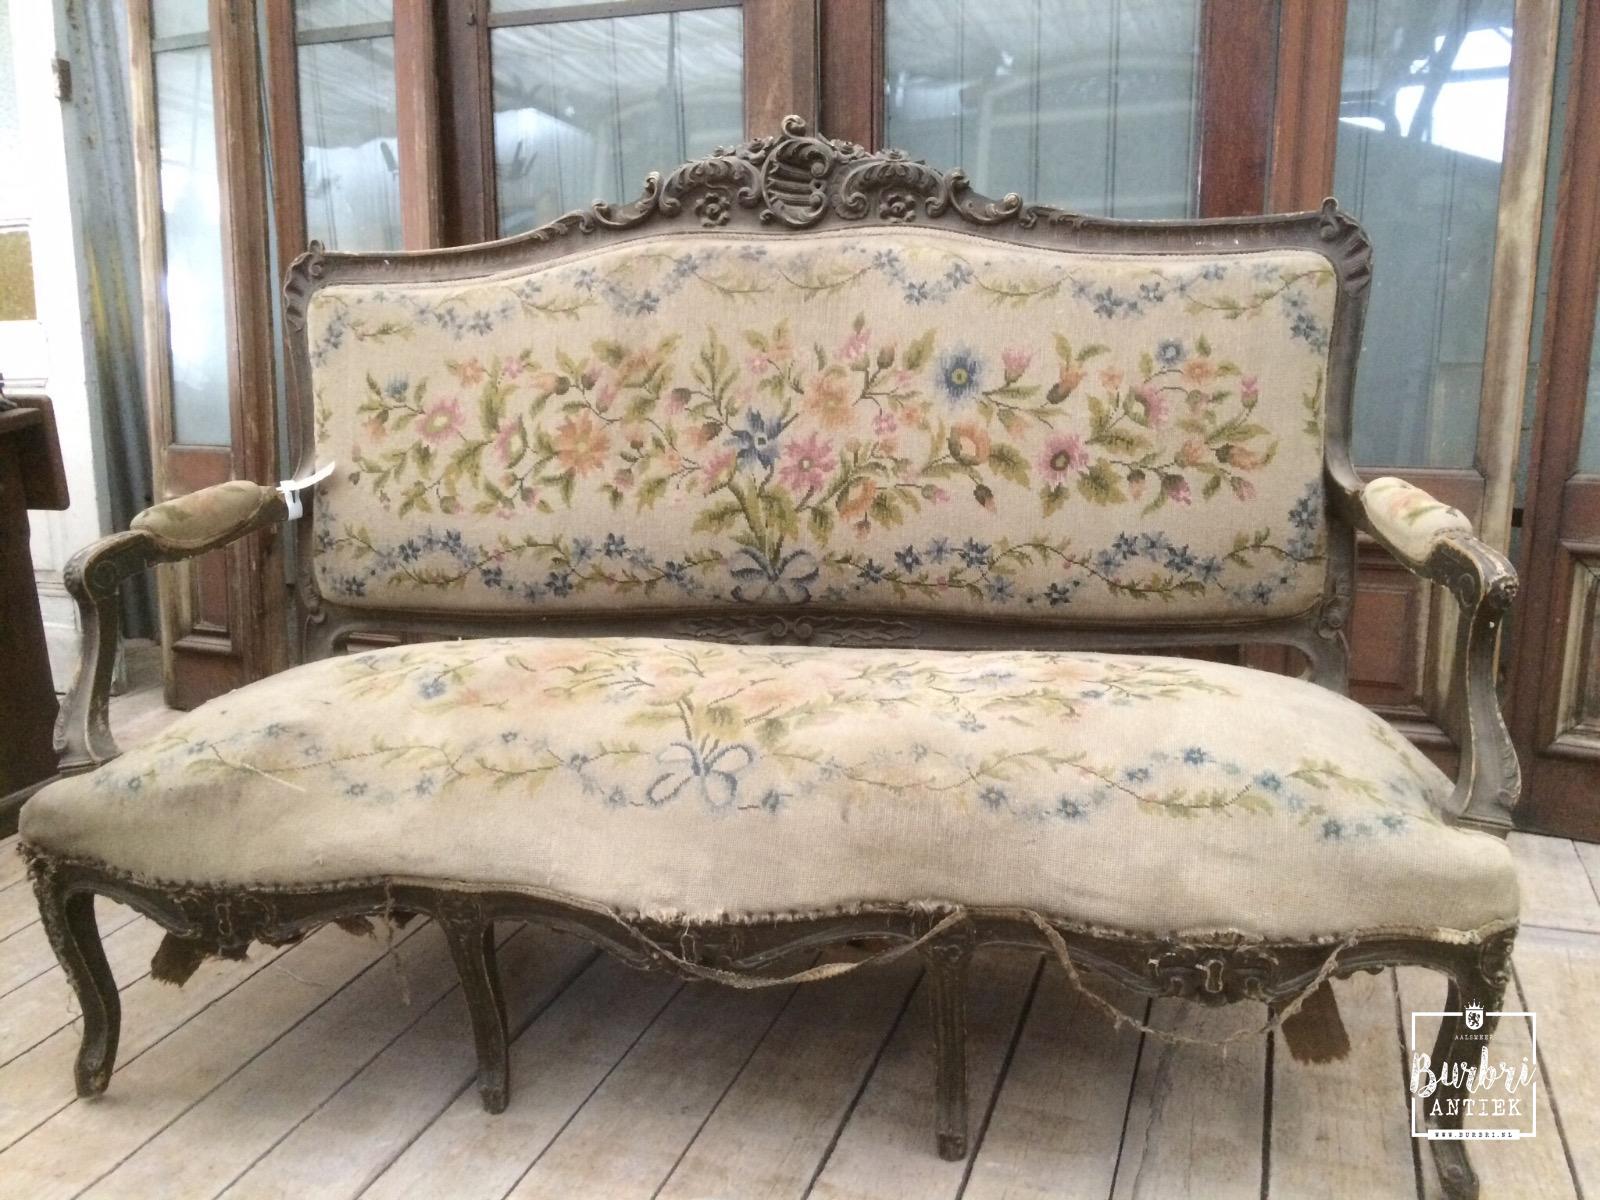 mechanisch sponsor Intrekking Antique sofa original old - Antieke banken - Antieke meubels - Burbri